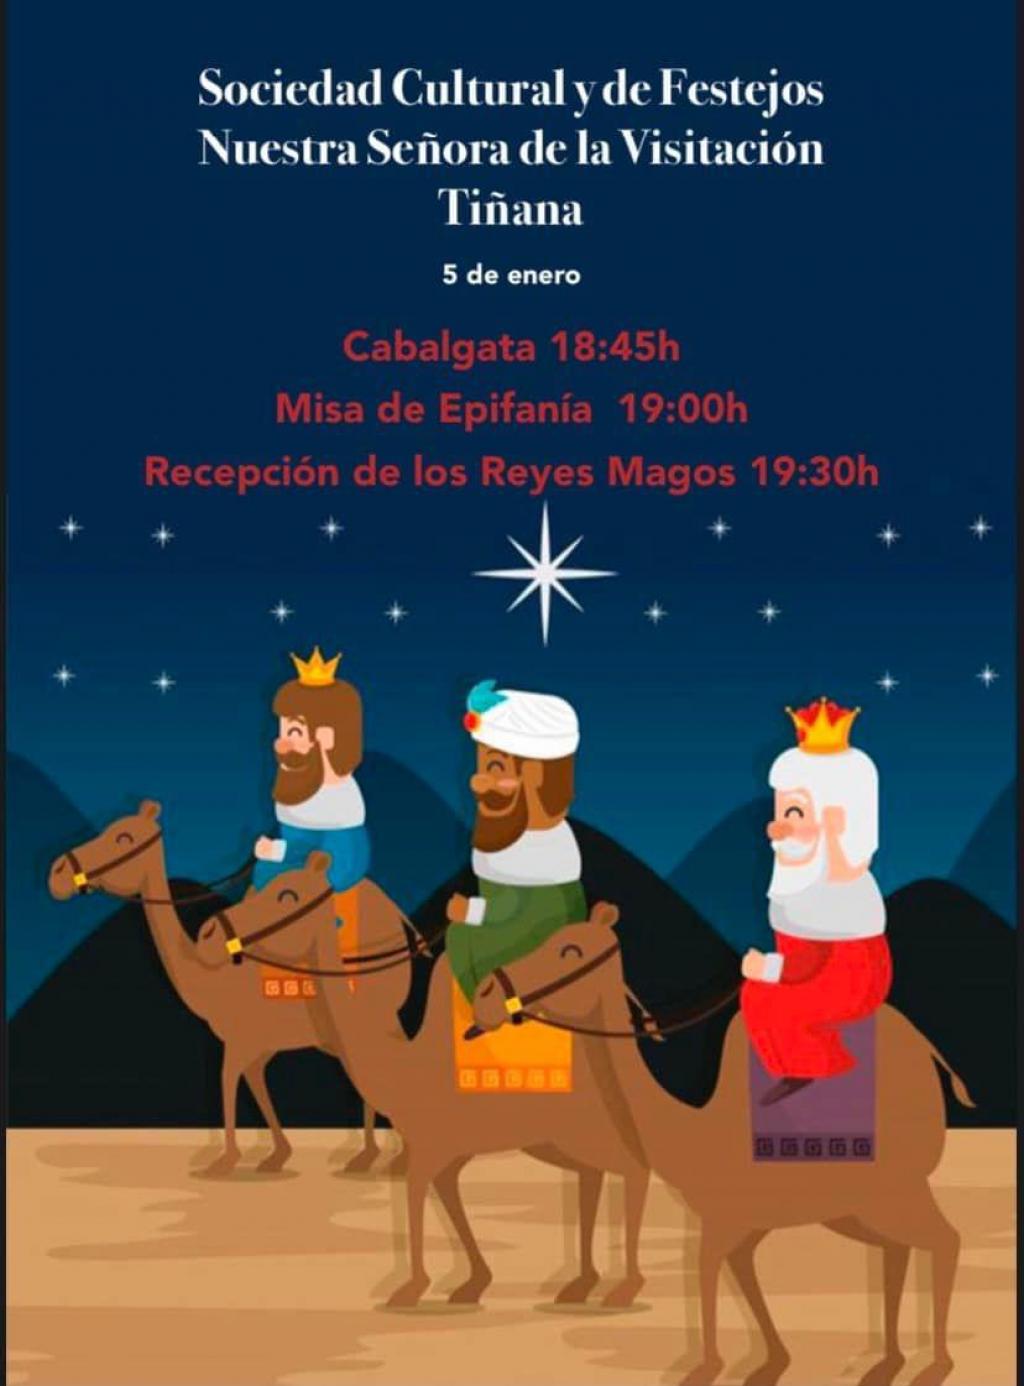 El Tapin - Los Reyes Magos visitarán Tiñana el 5 de enero